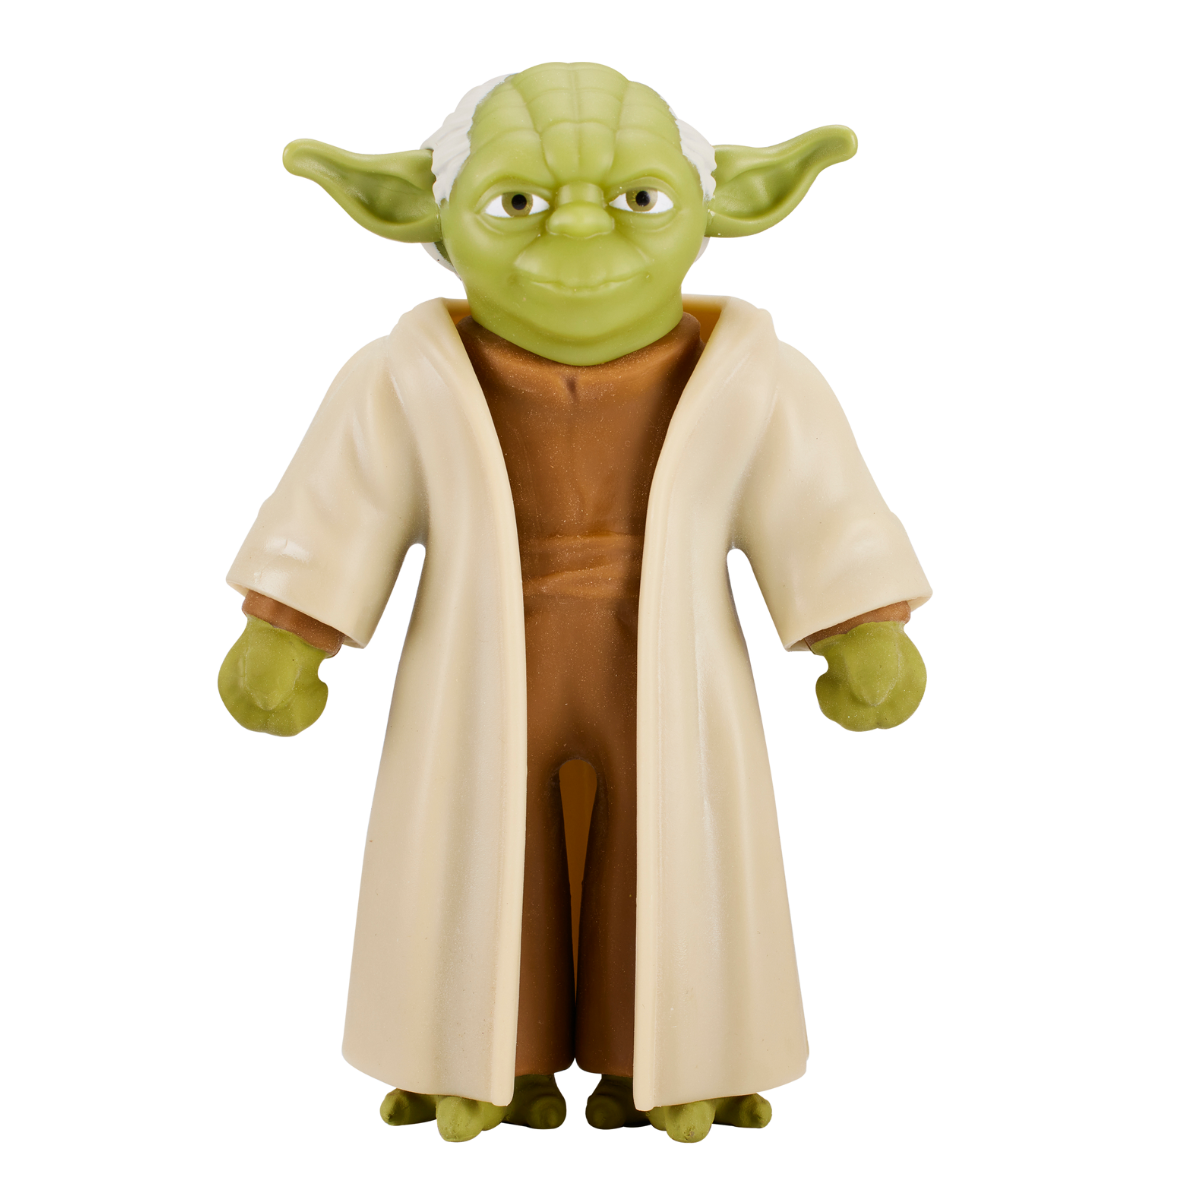 Mini Star Wars Baby Yoda Stretch